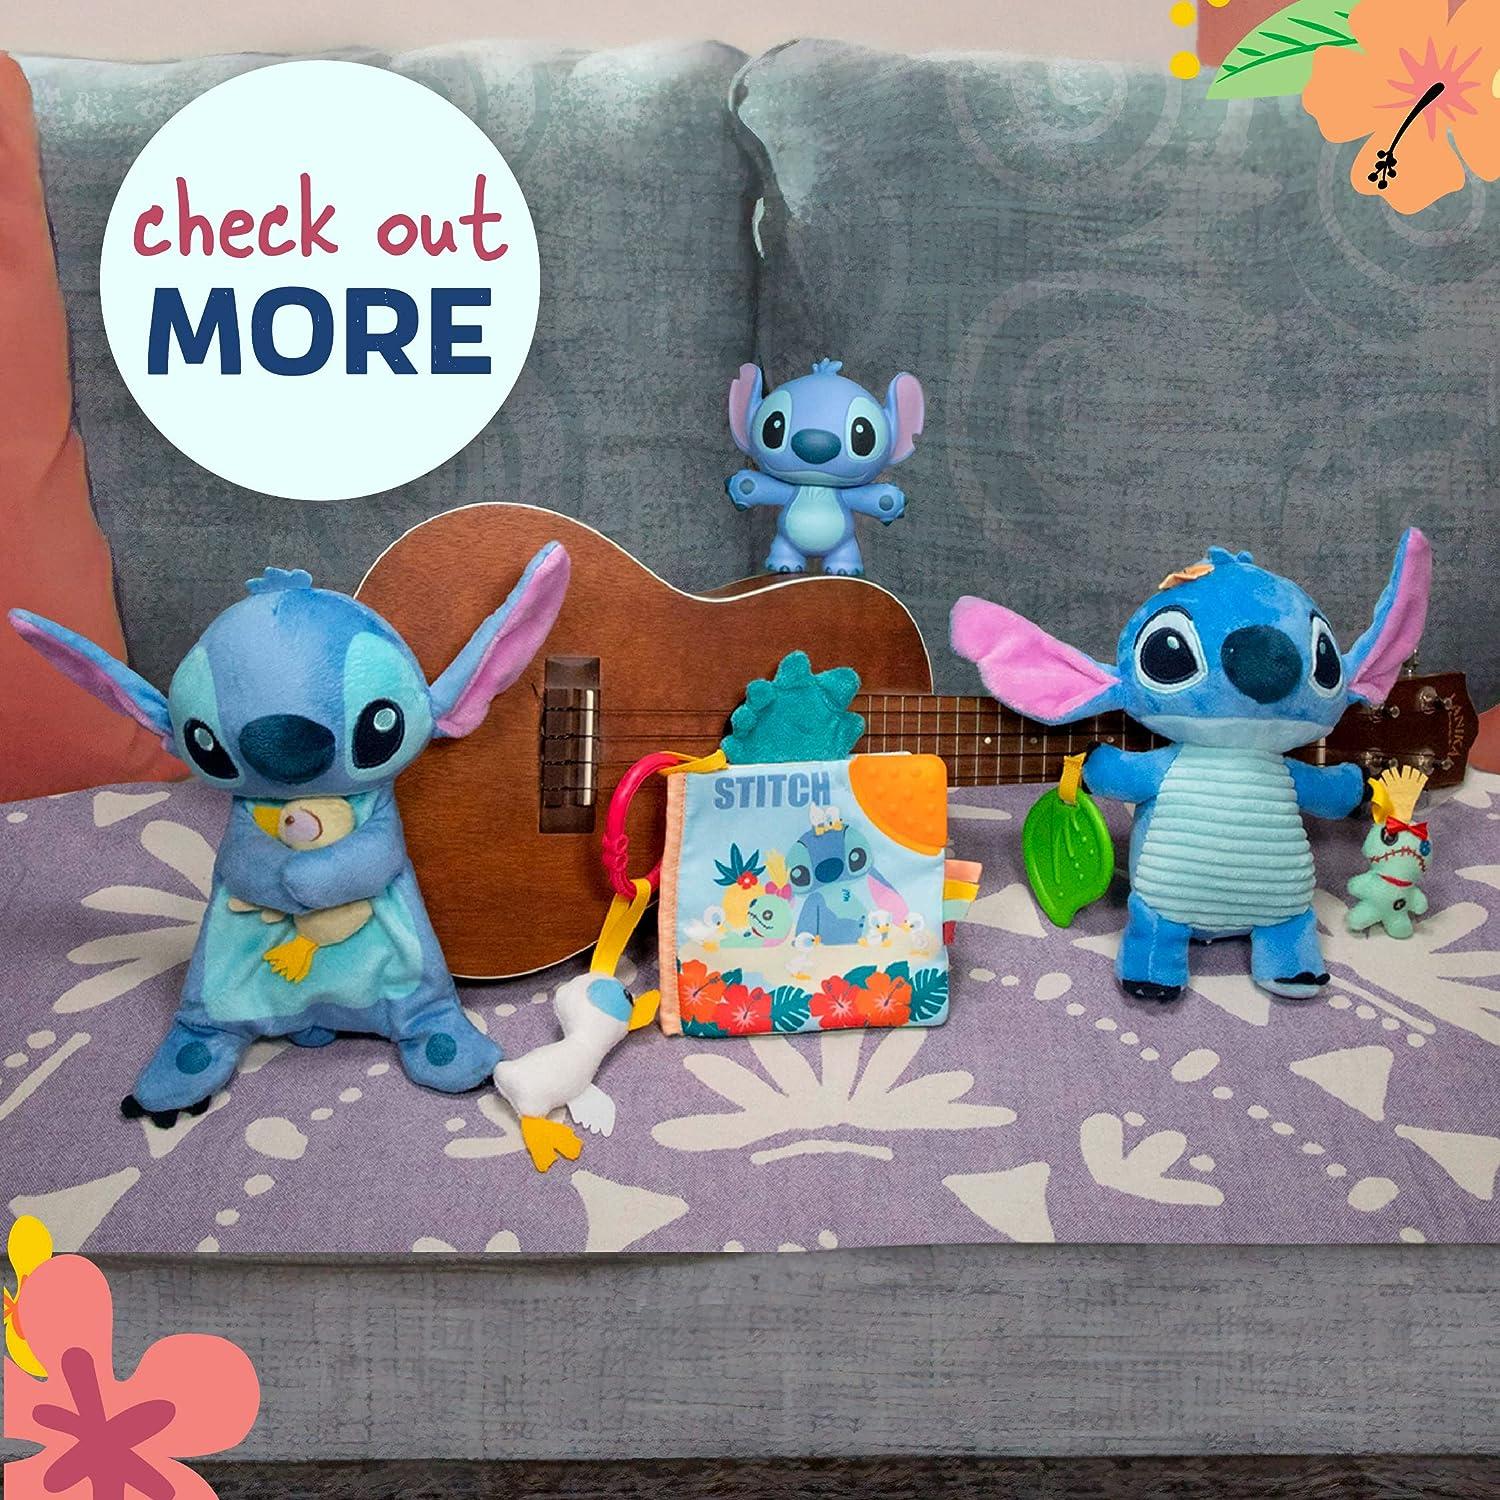 Lilo and Stitch Toys, Plush & More